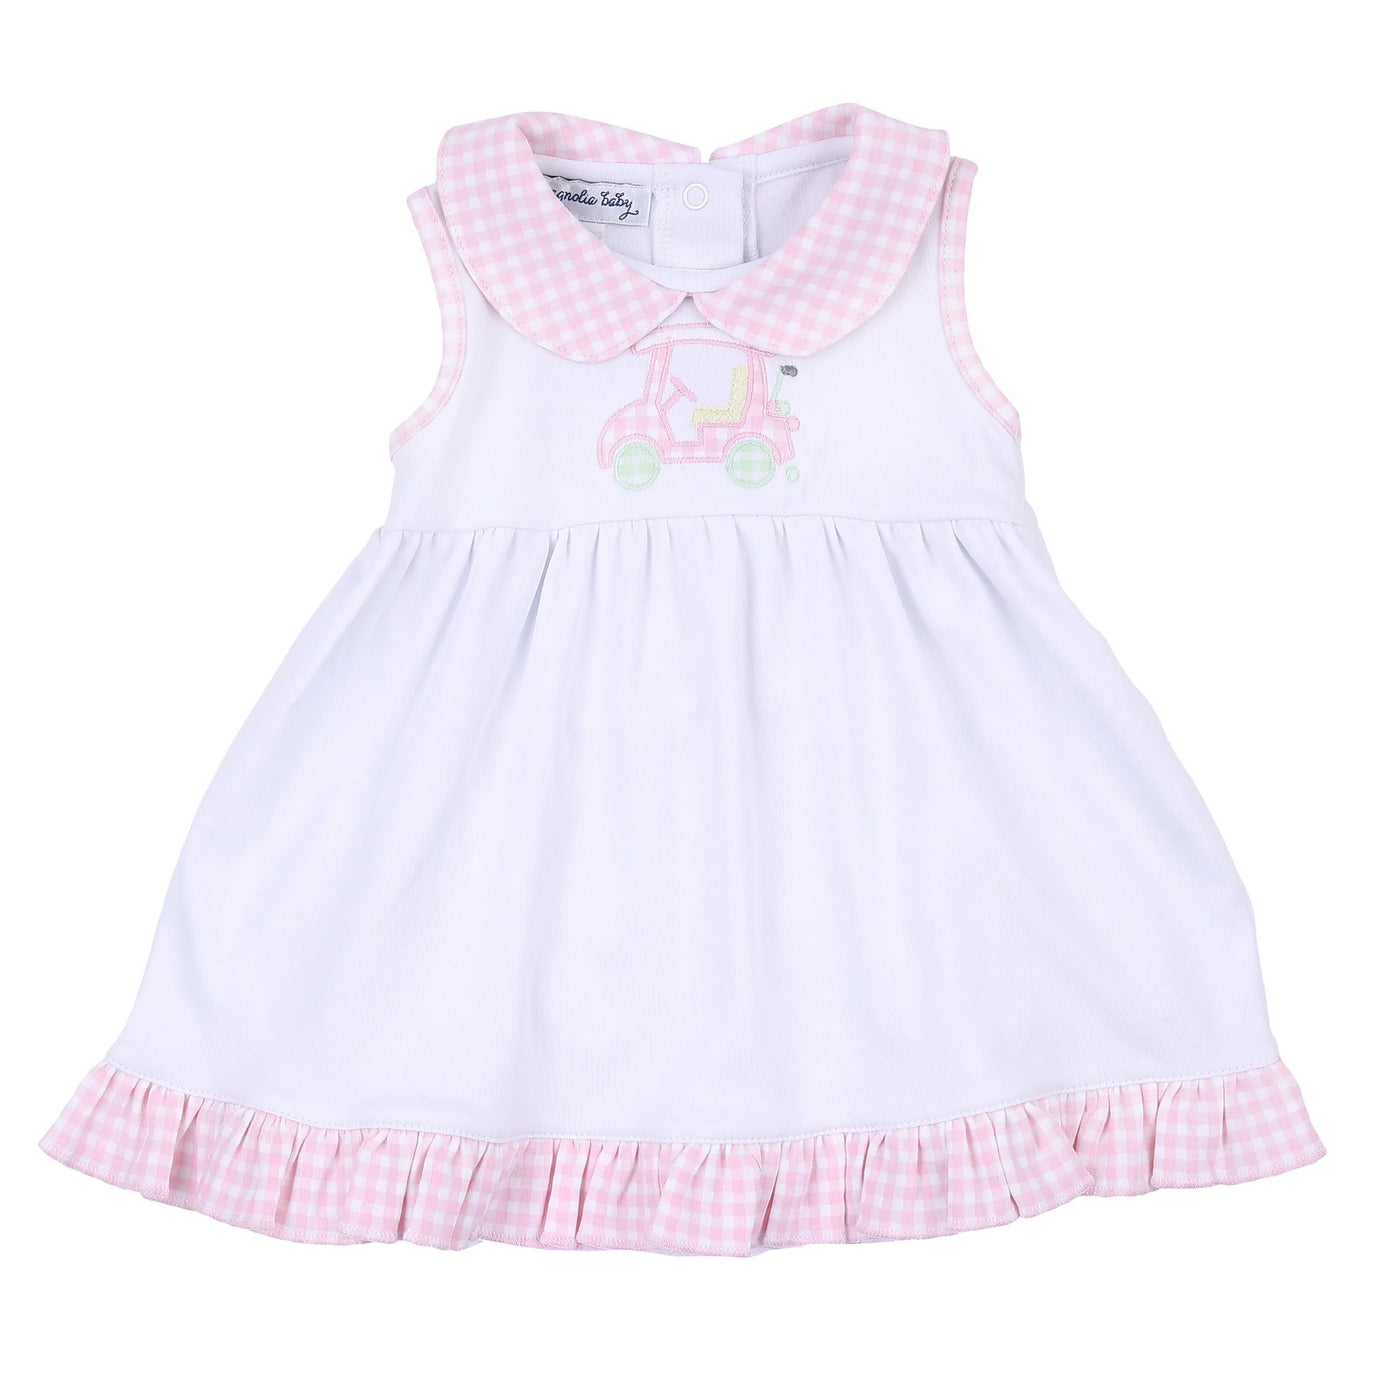 Little Caddie Applique Sleeveless Toddler Dress